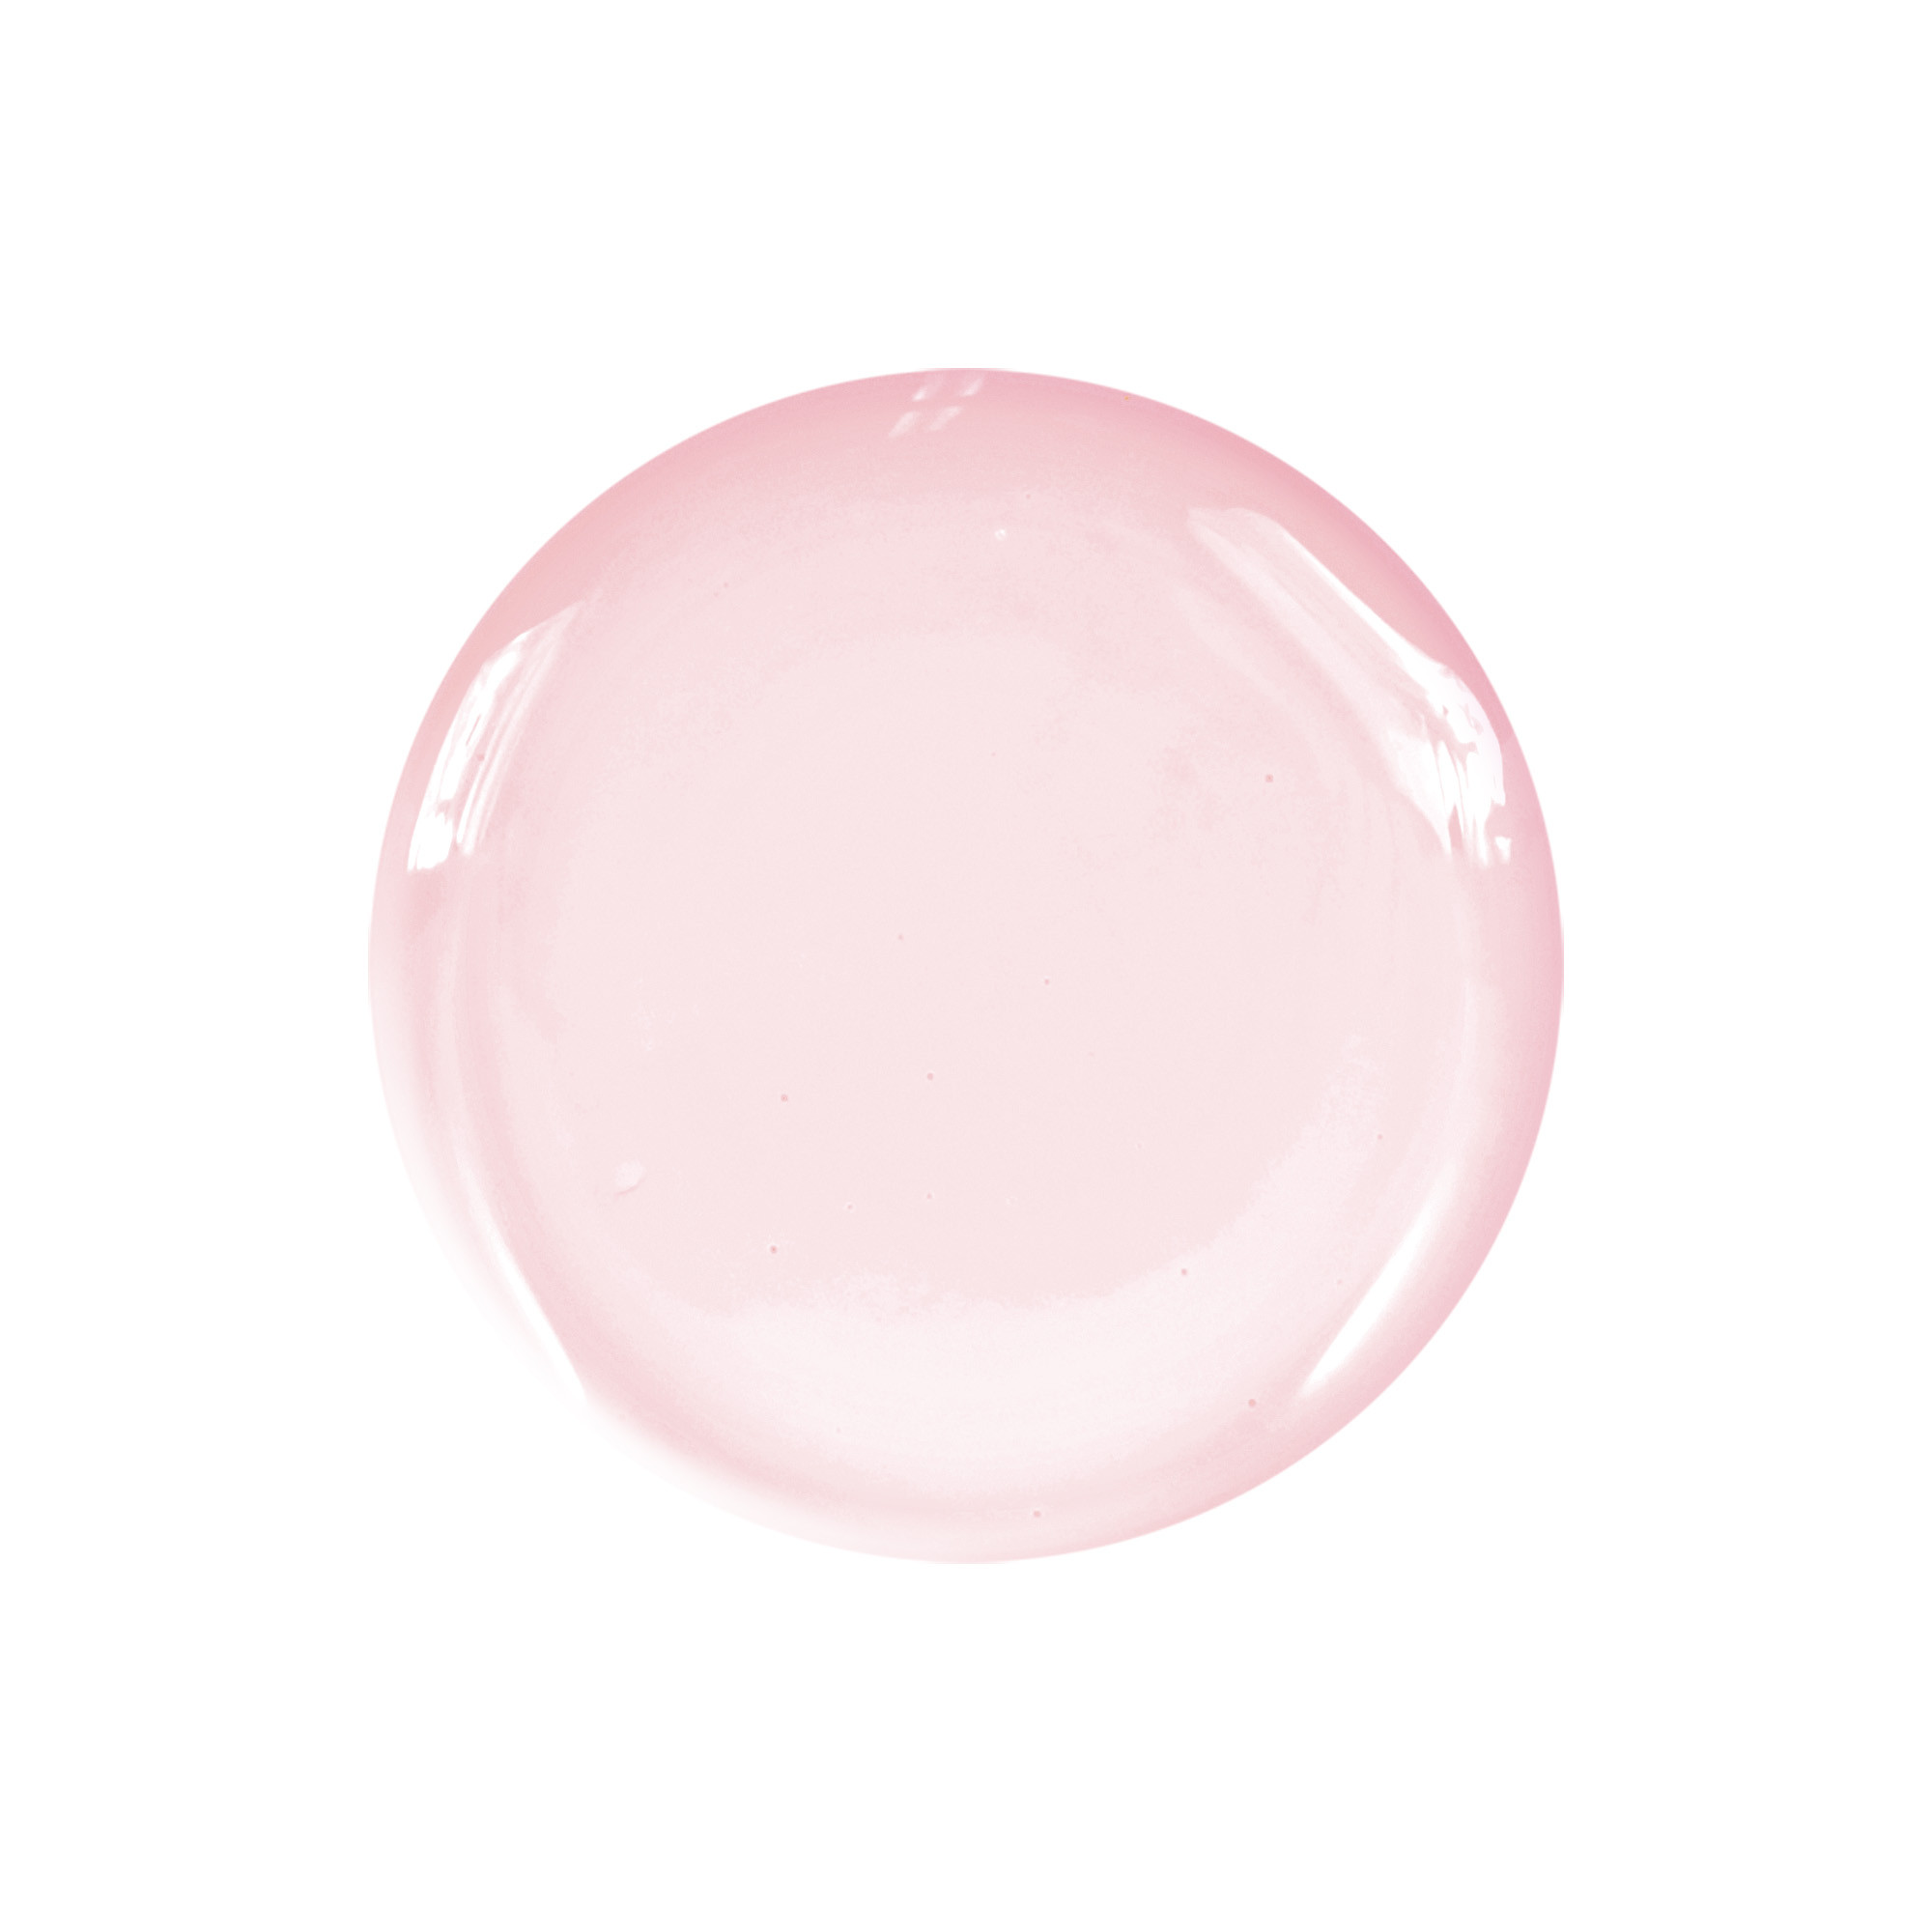 Smalto semipermanente rosa nude Rokoko 10 ml Laqerìs TNS